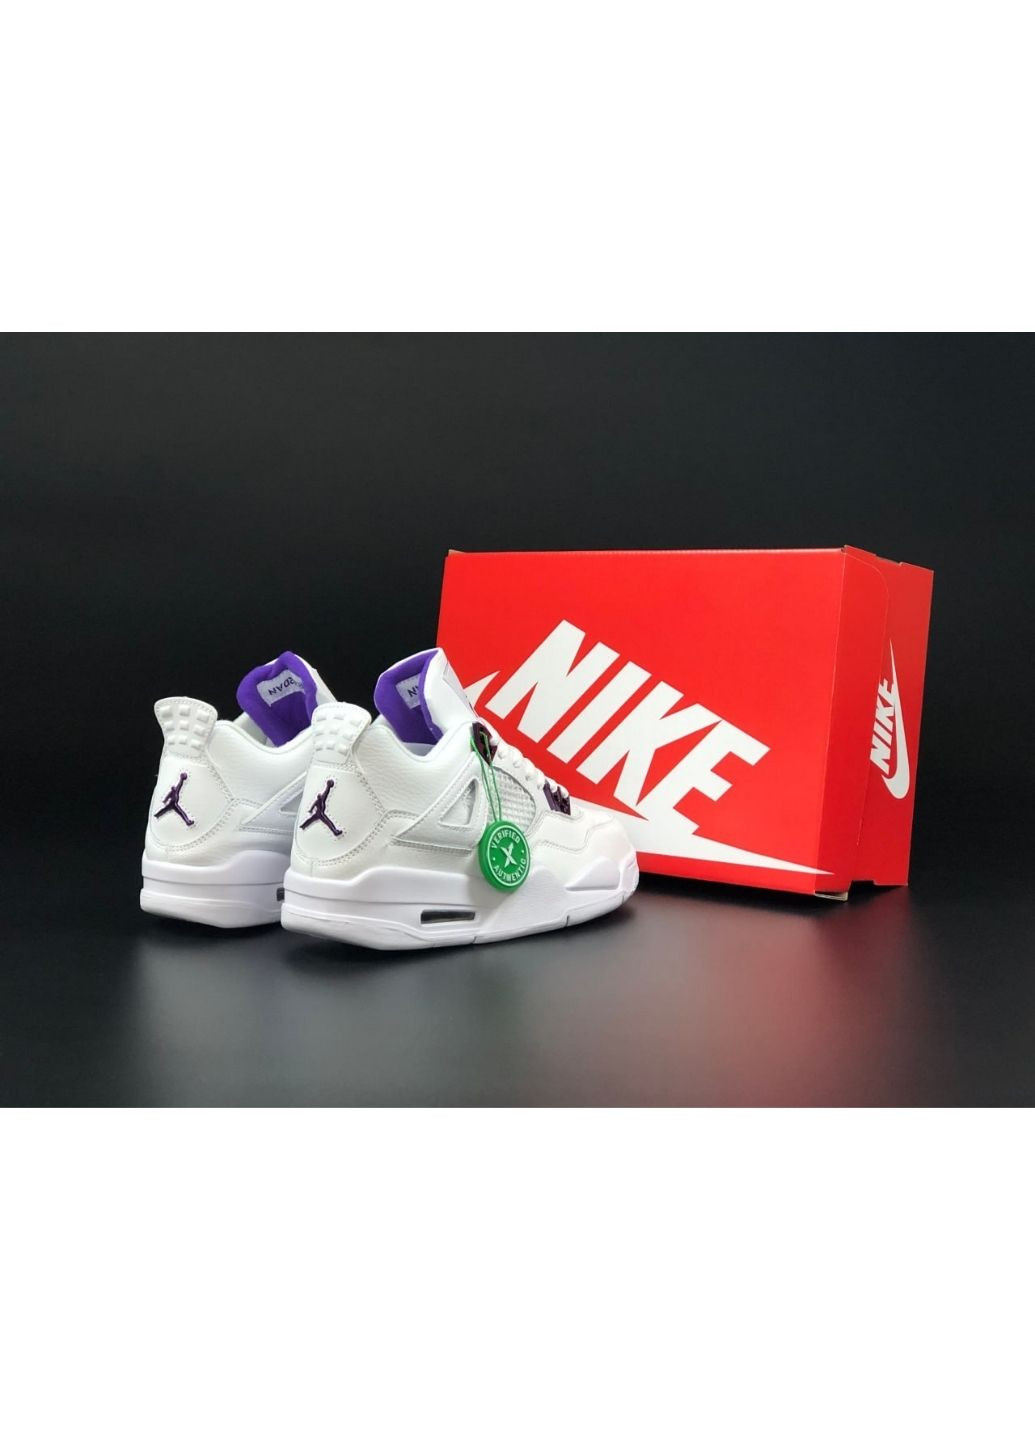 Белые демисезонные женские кроссовки белые с фиолетовым «no name» Nike Air Jordan 4 Retro